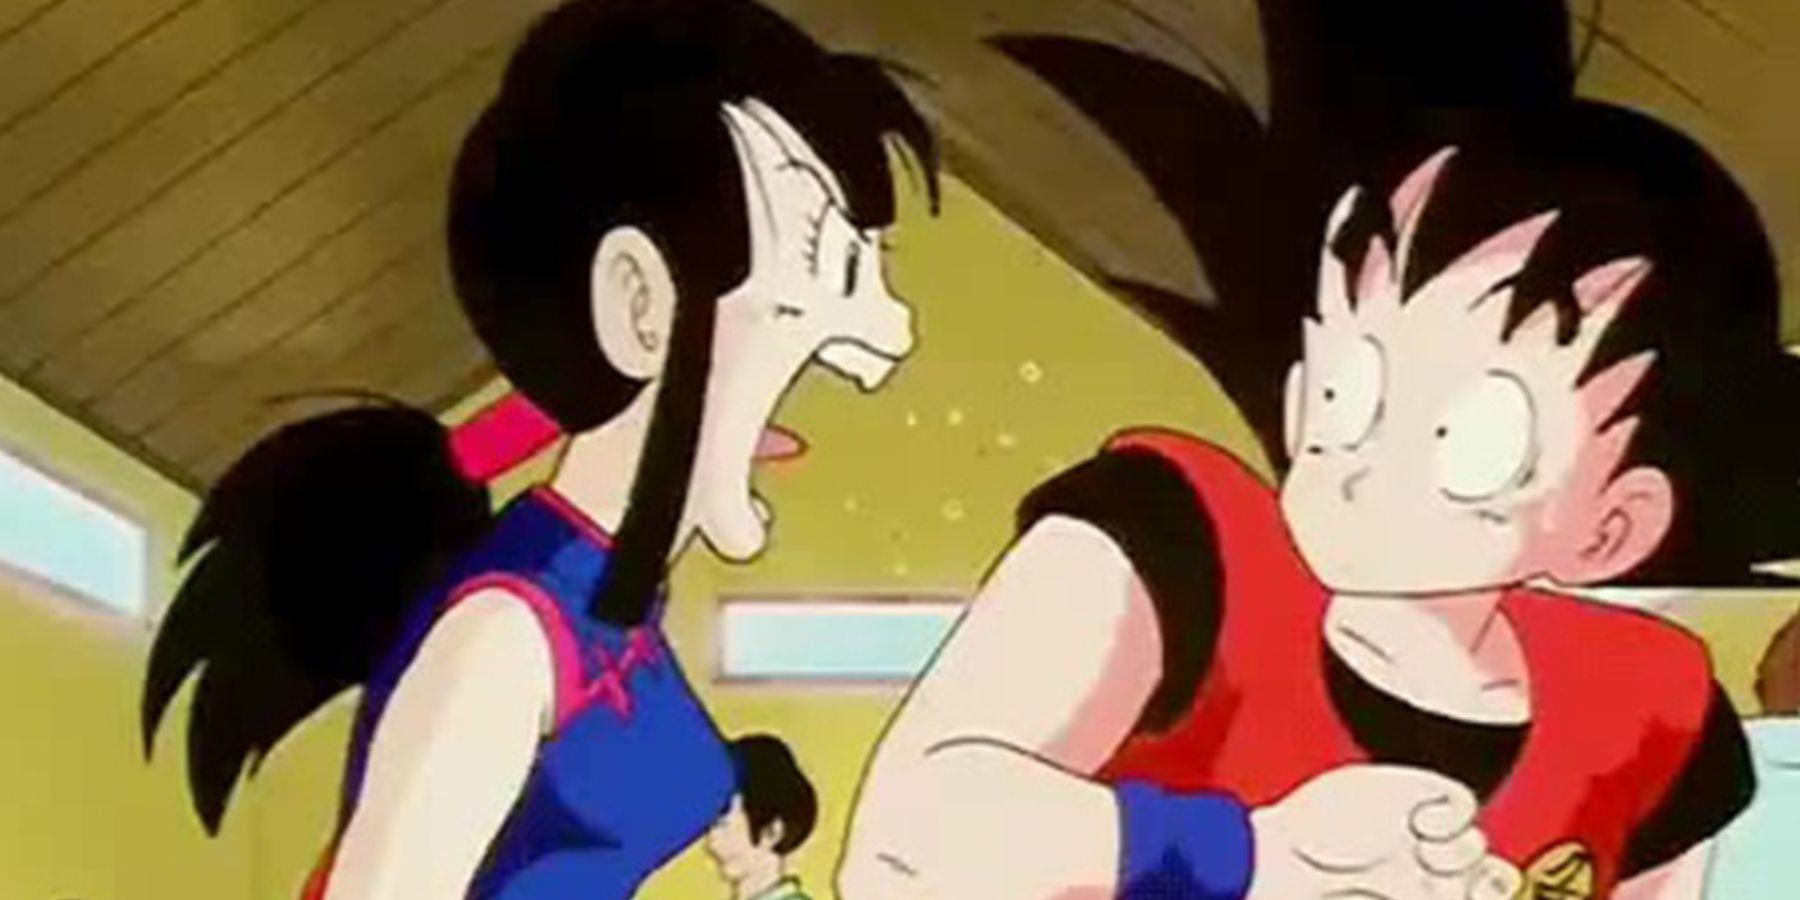 Chi-Chi yelling at Goku in Dragon Ball.